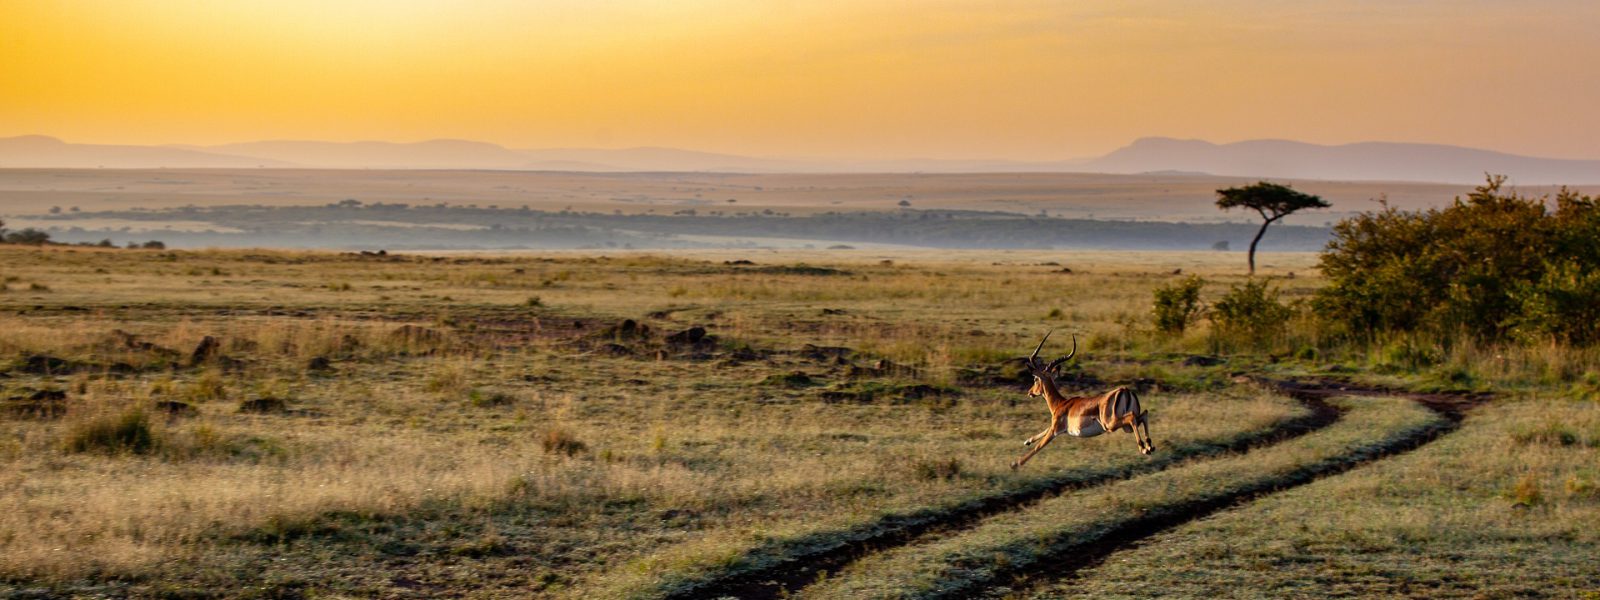 9 Days Explore Kenya Safari